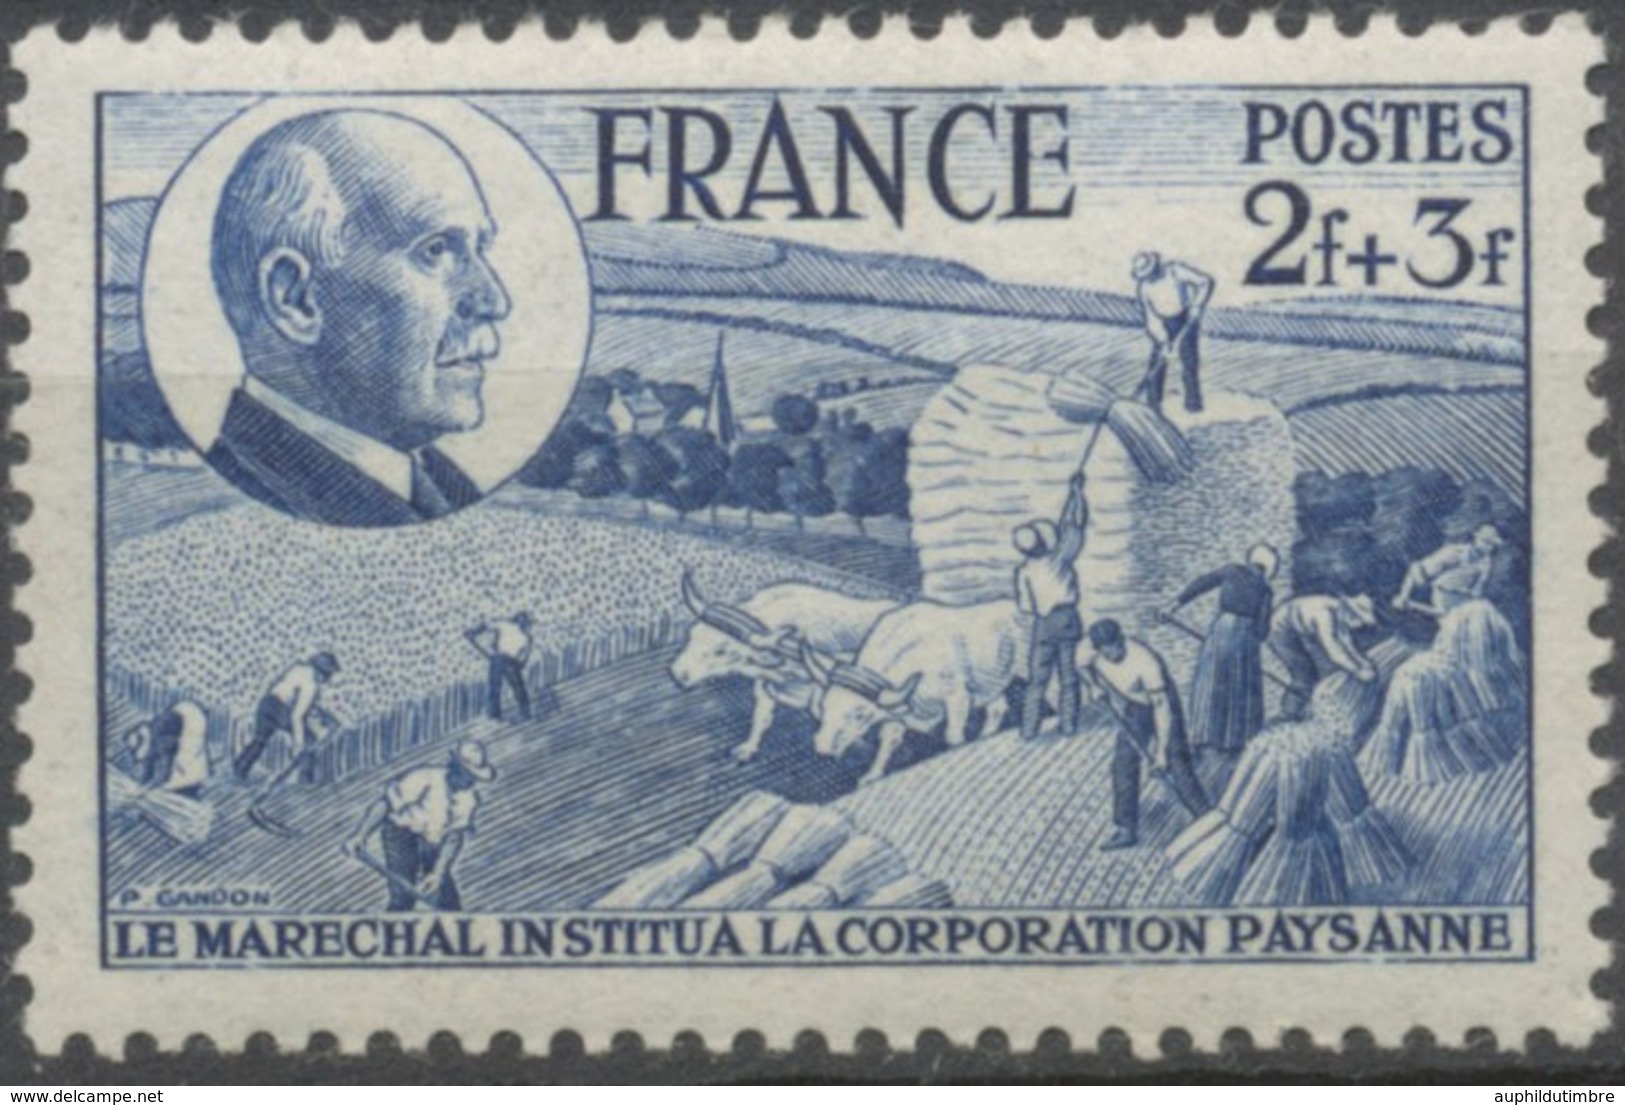 88e Anniversaire Du Maréchal Pétain. Corporation Paysanne.  2f.+3f. Bleu Neuf Luxe ** Y607 - Neufs